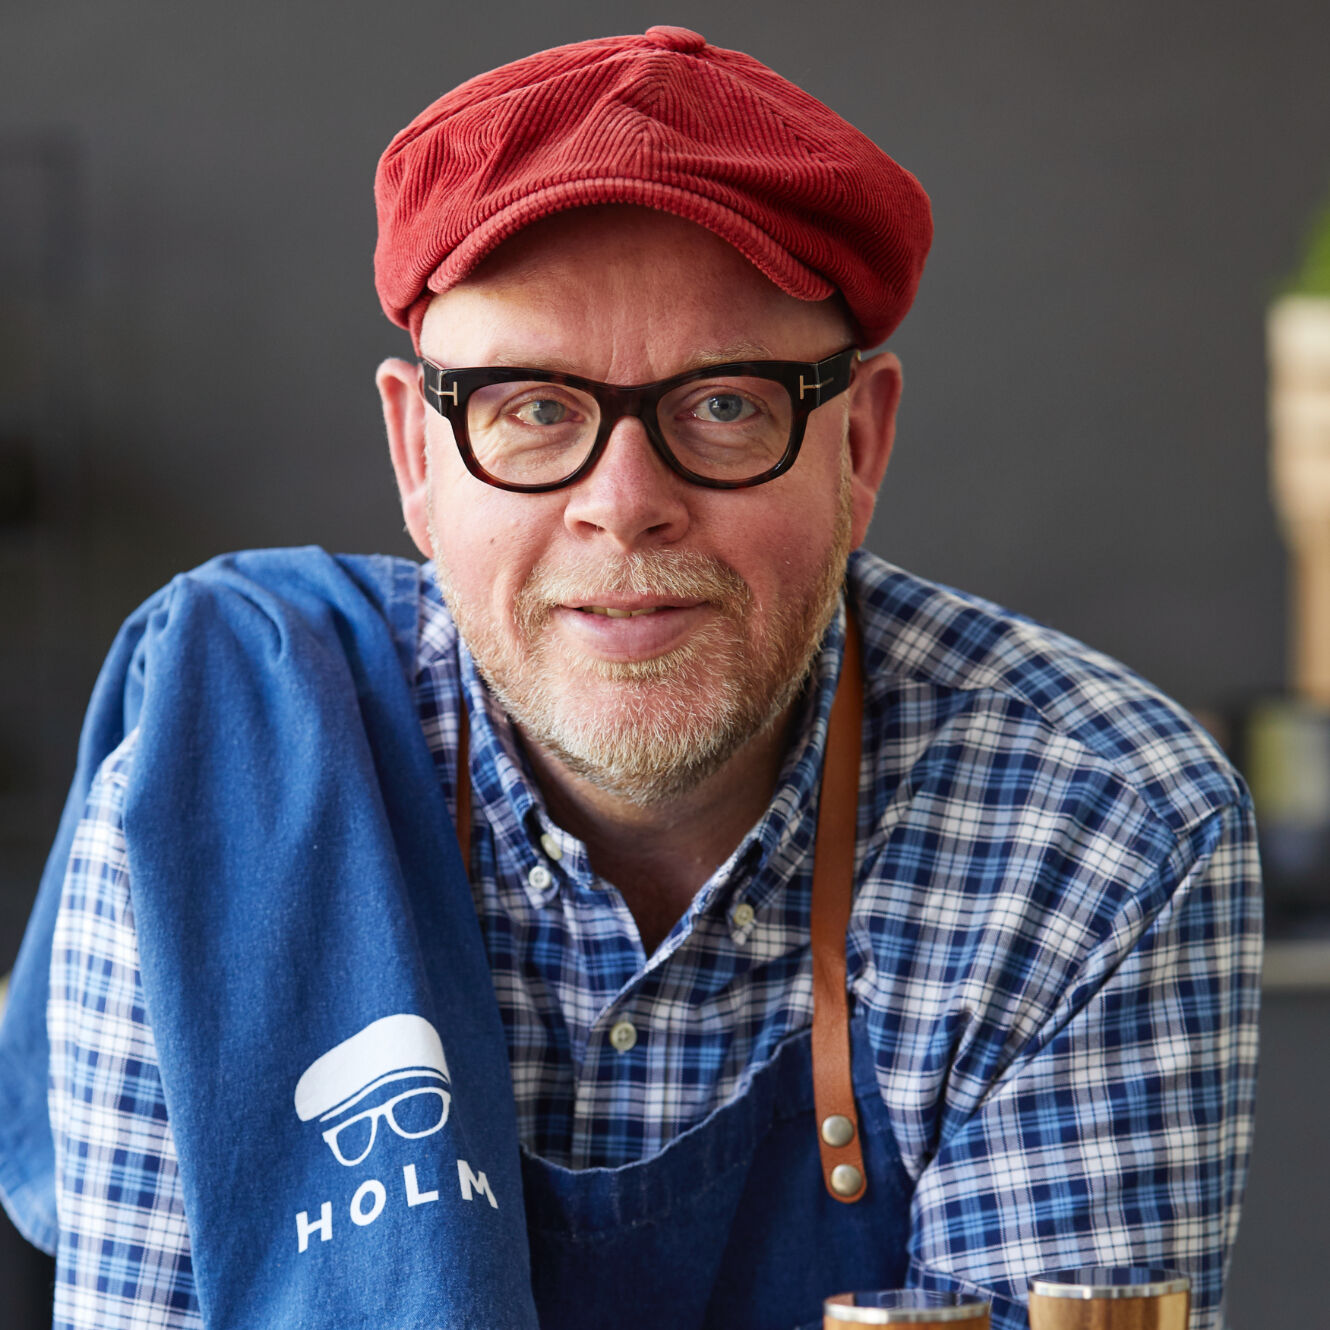 HOLM | Køkkenværktøj fra Claus Holm | Køb hos Living Dining